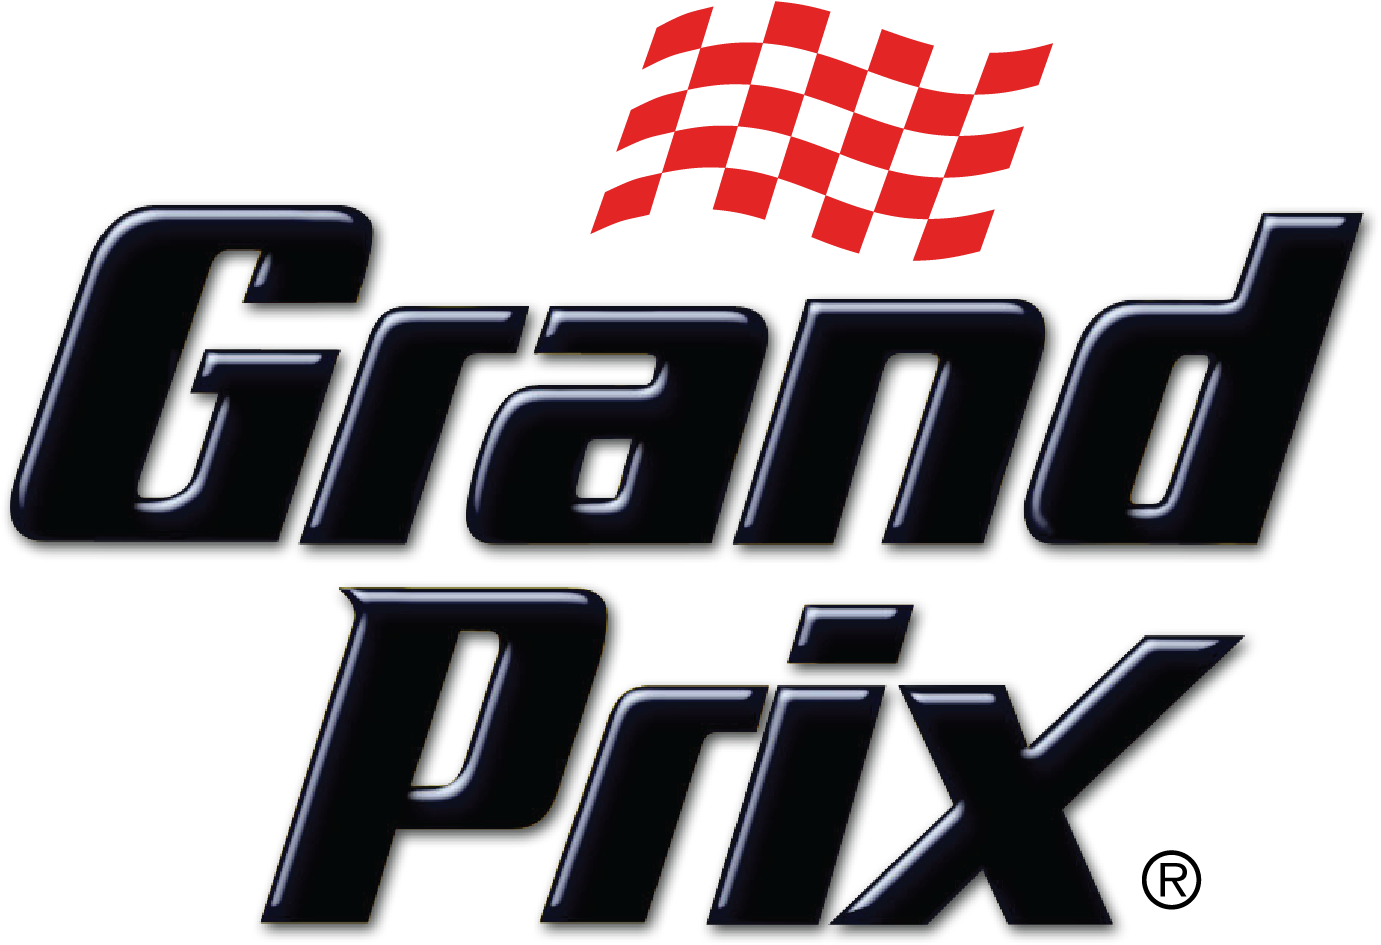 Grand-Prix-Transparent-Images.png